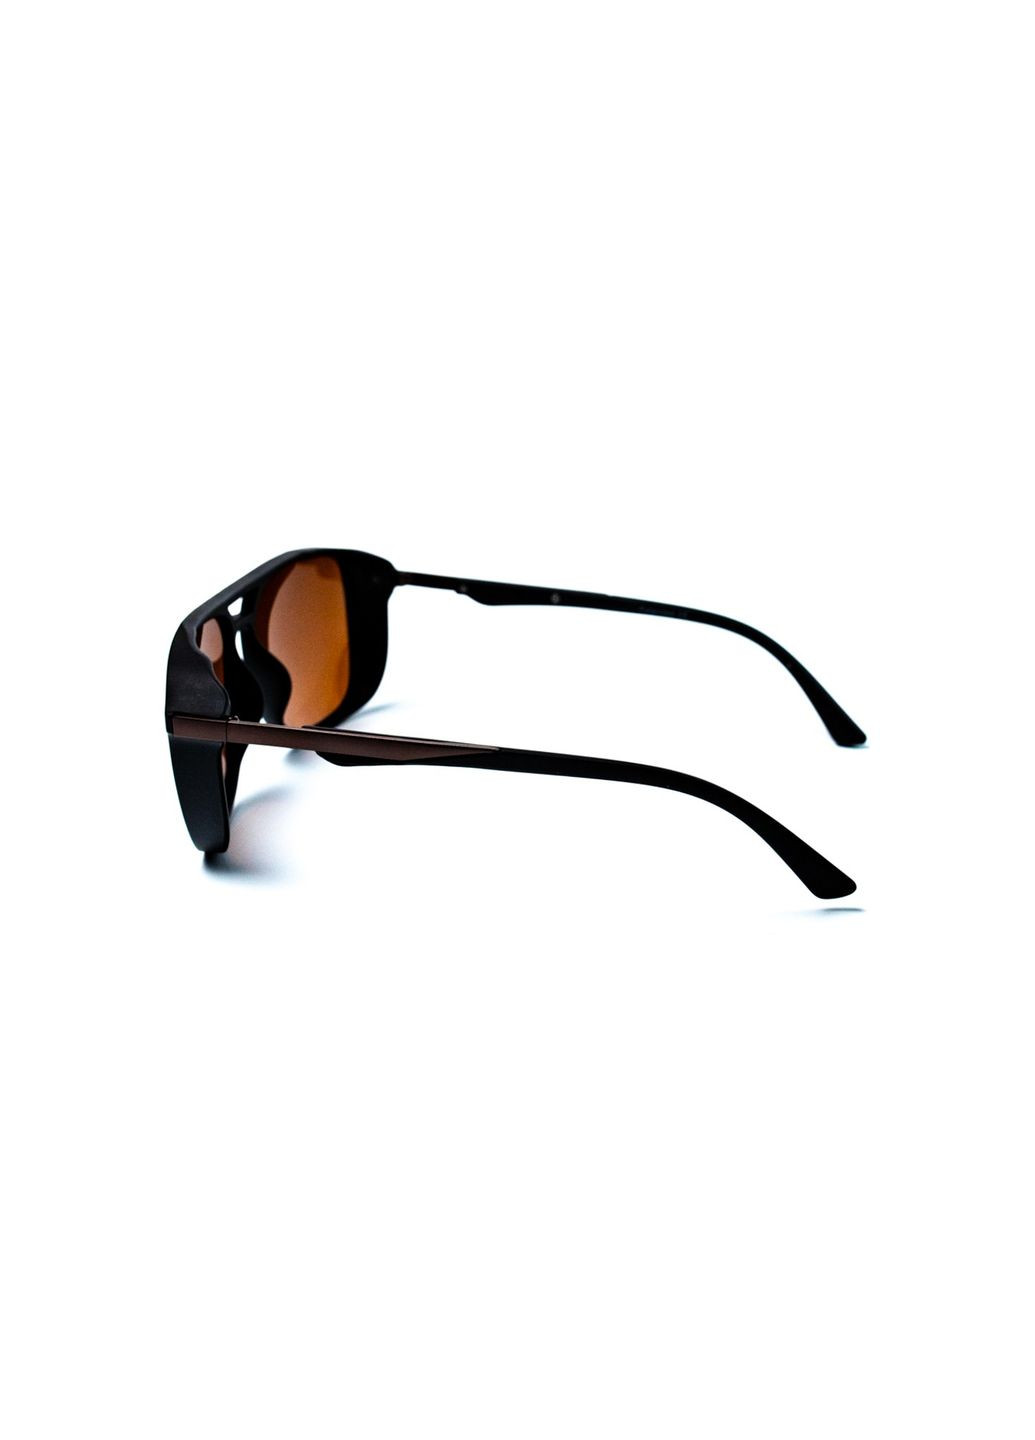 Солнцезащитные очки с поляризацией Фэшн мужские 428-805 LuckyLOOK 428-805м (291016201)